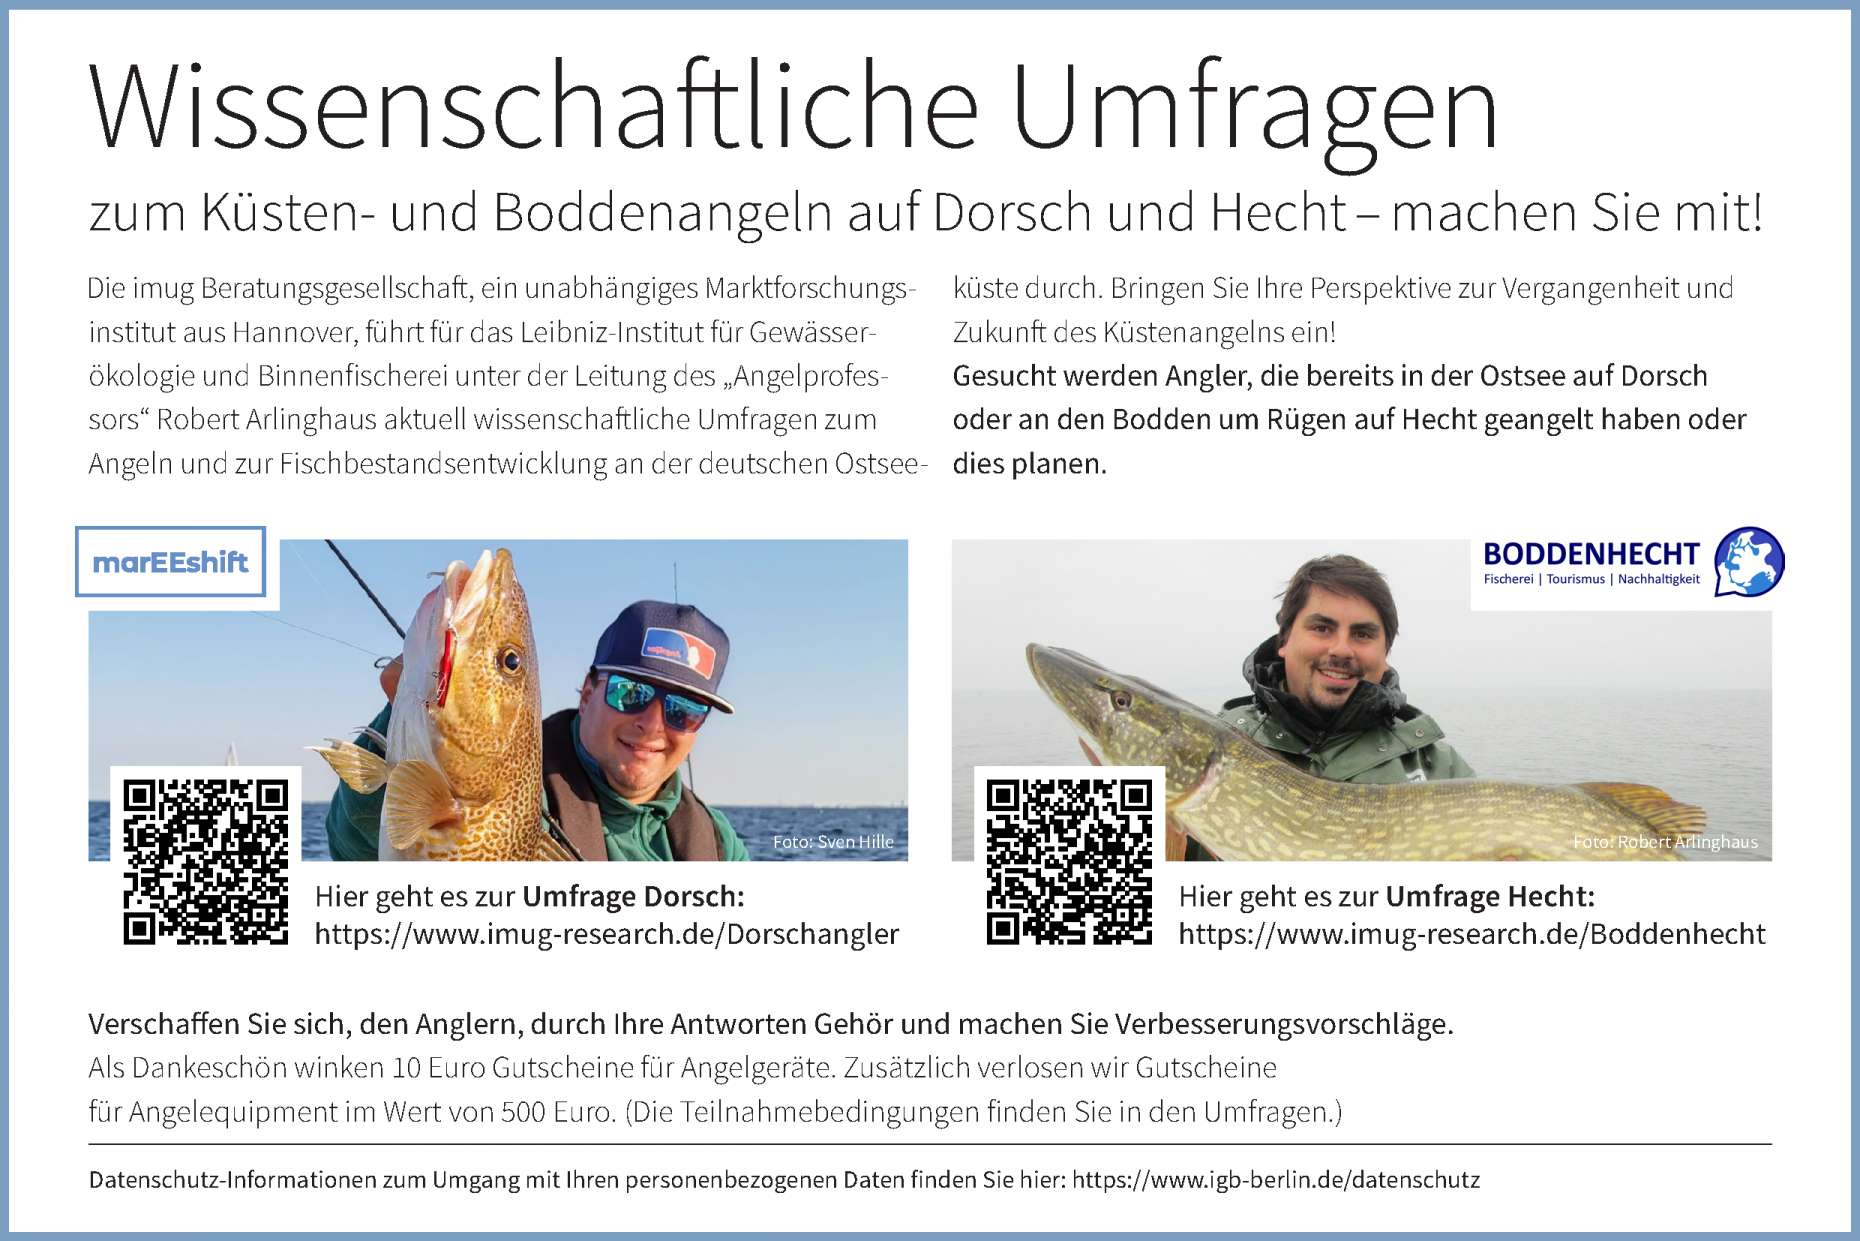 Jetzt seid ihr gefragt, eure Meinung zählt! Prof. Dr. Robert Arlinghaus und sein Team sind interessiert daran, wie die Fischbestände von den Dorsch- und Hechtanglern wahrgenommen werden.